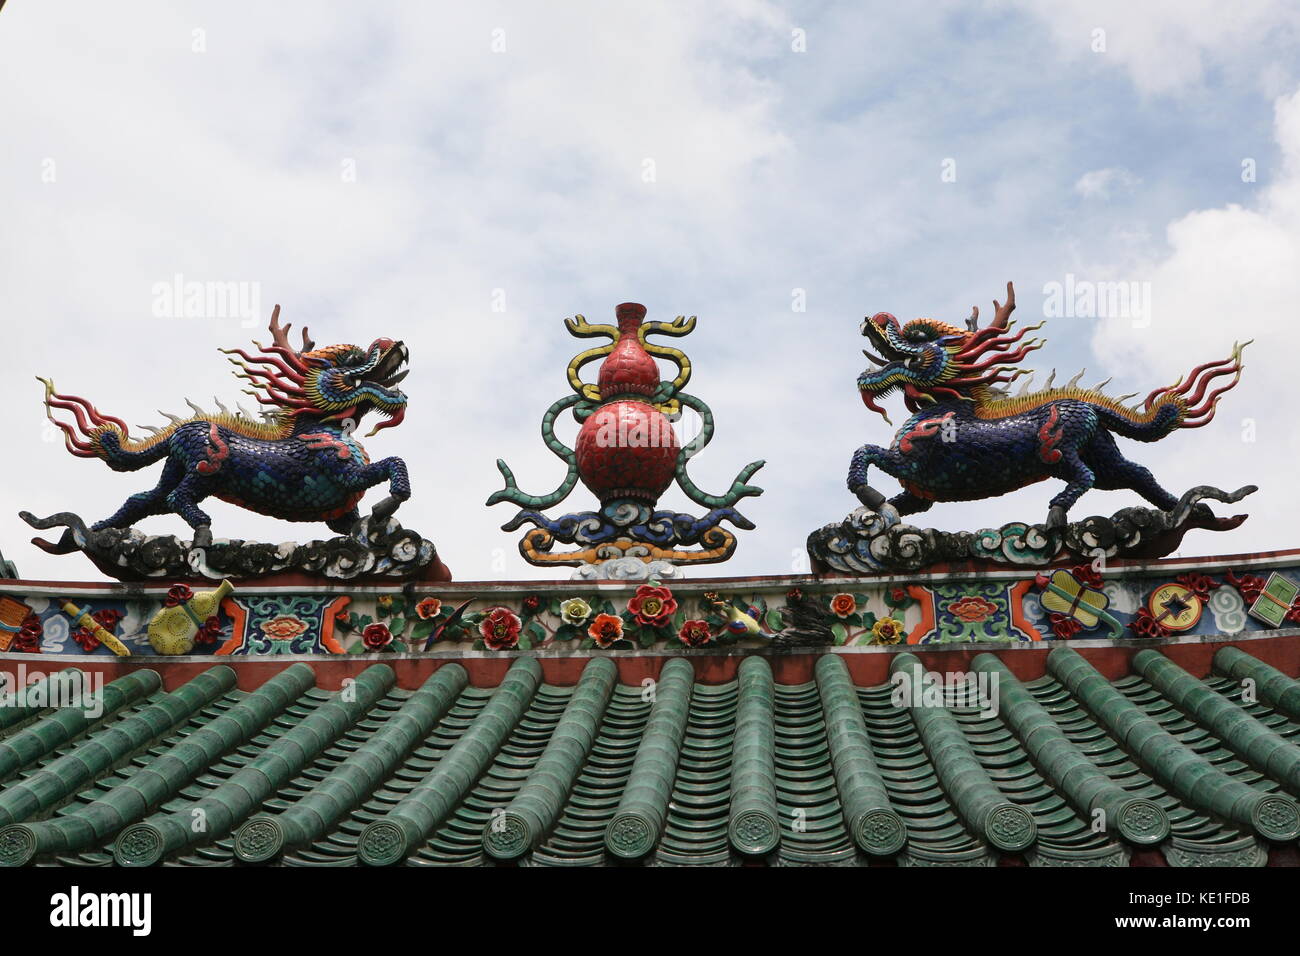 Figuren auf dem Dach - Tua Pek Kong Tempel - Kuching - chiffres sur le toit - Temple Tua Pek Kong - Kuching Banque D'Images